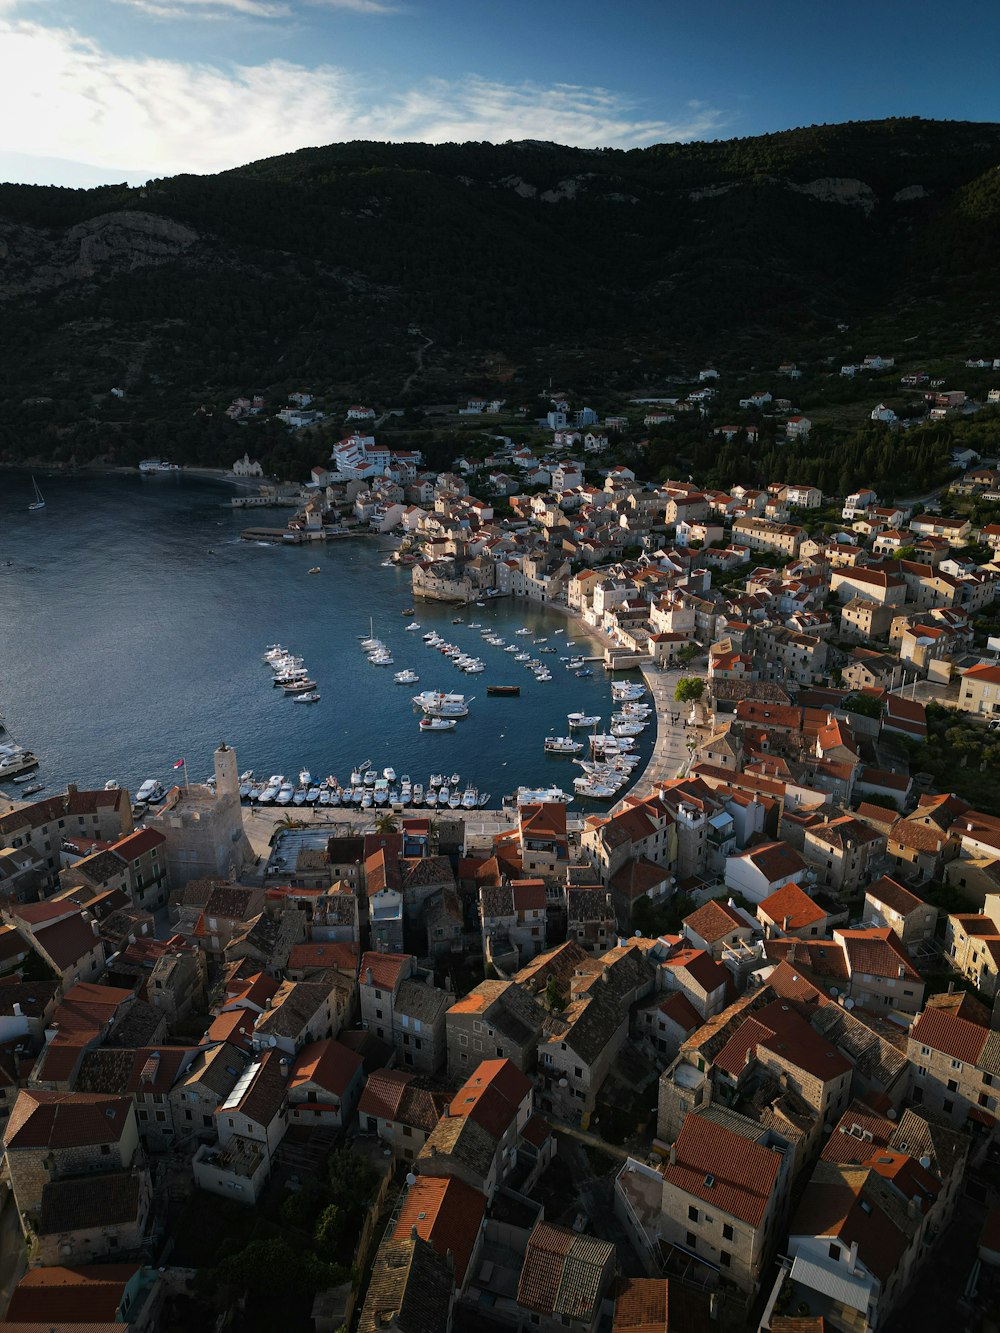 une vue aérienne d’une ville avec des bateaux dans l’eau